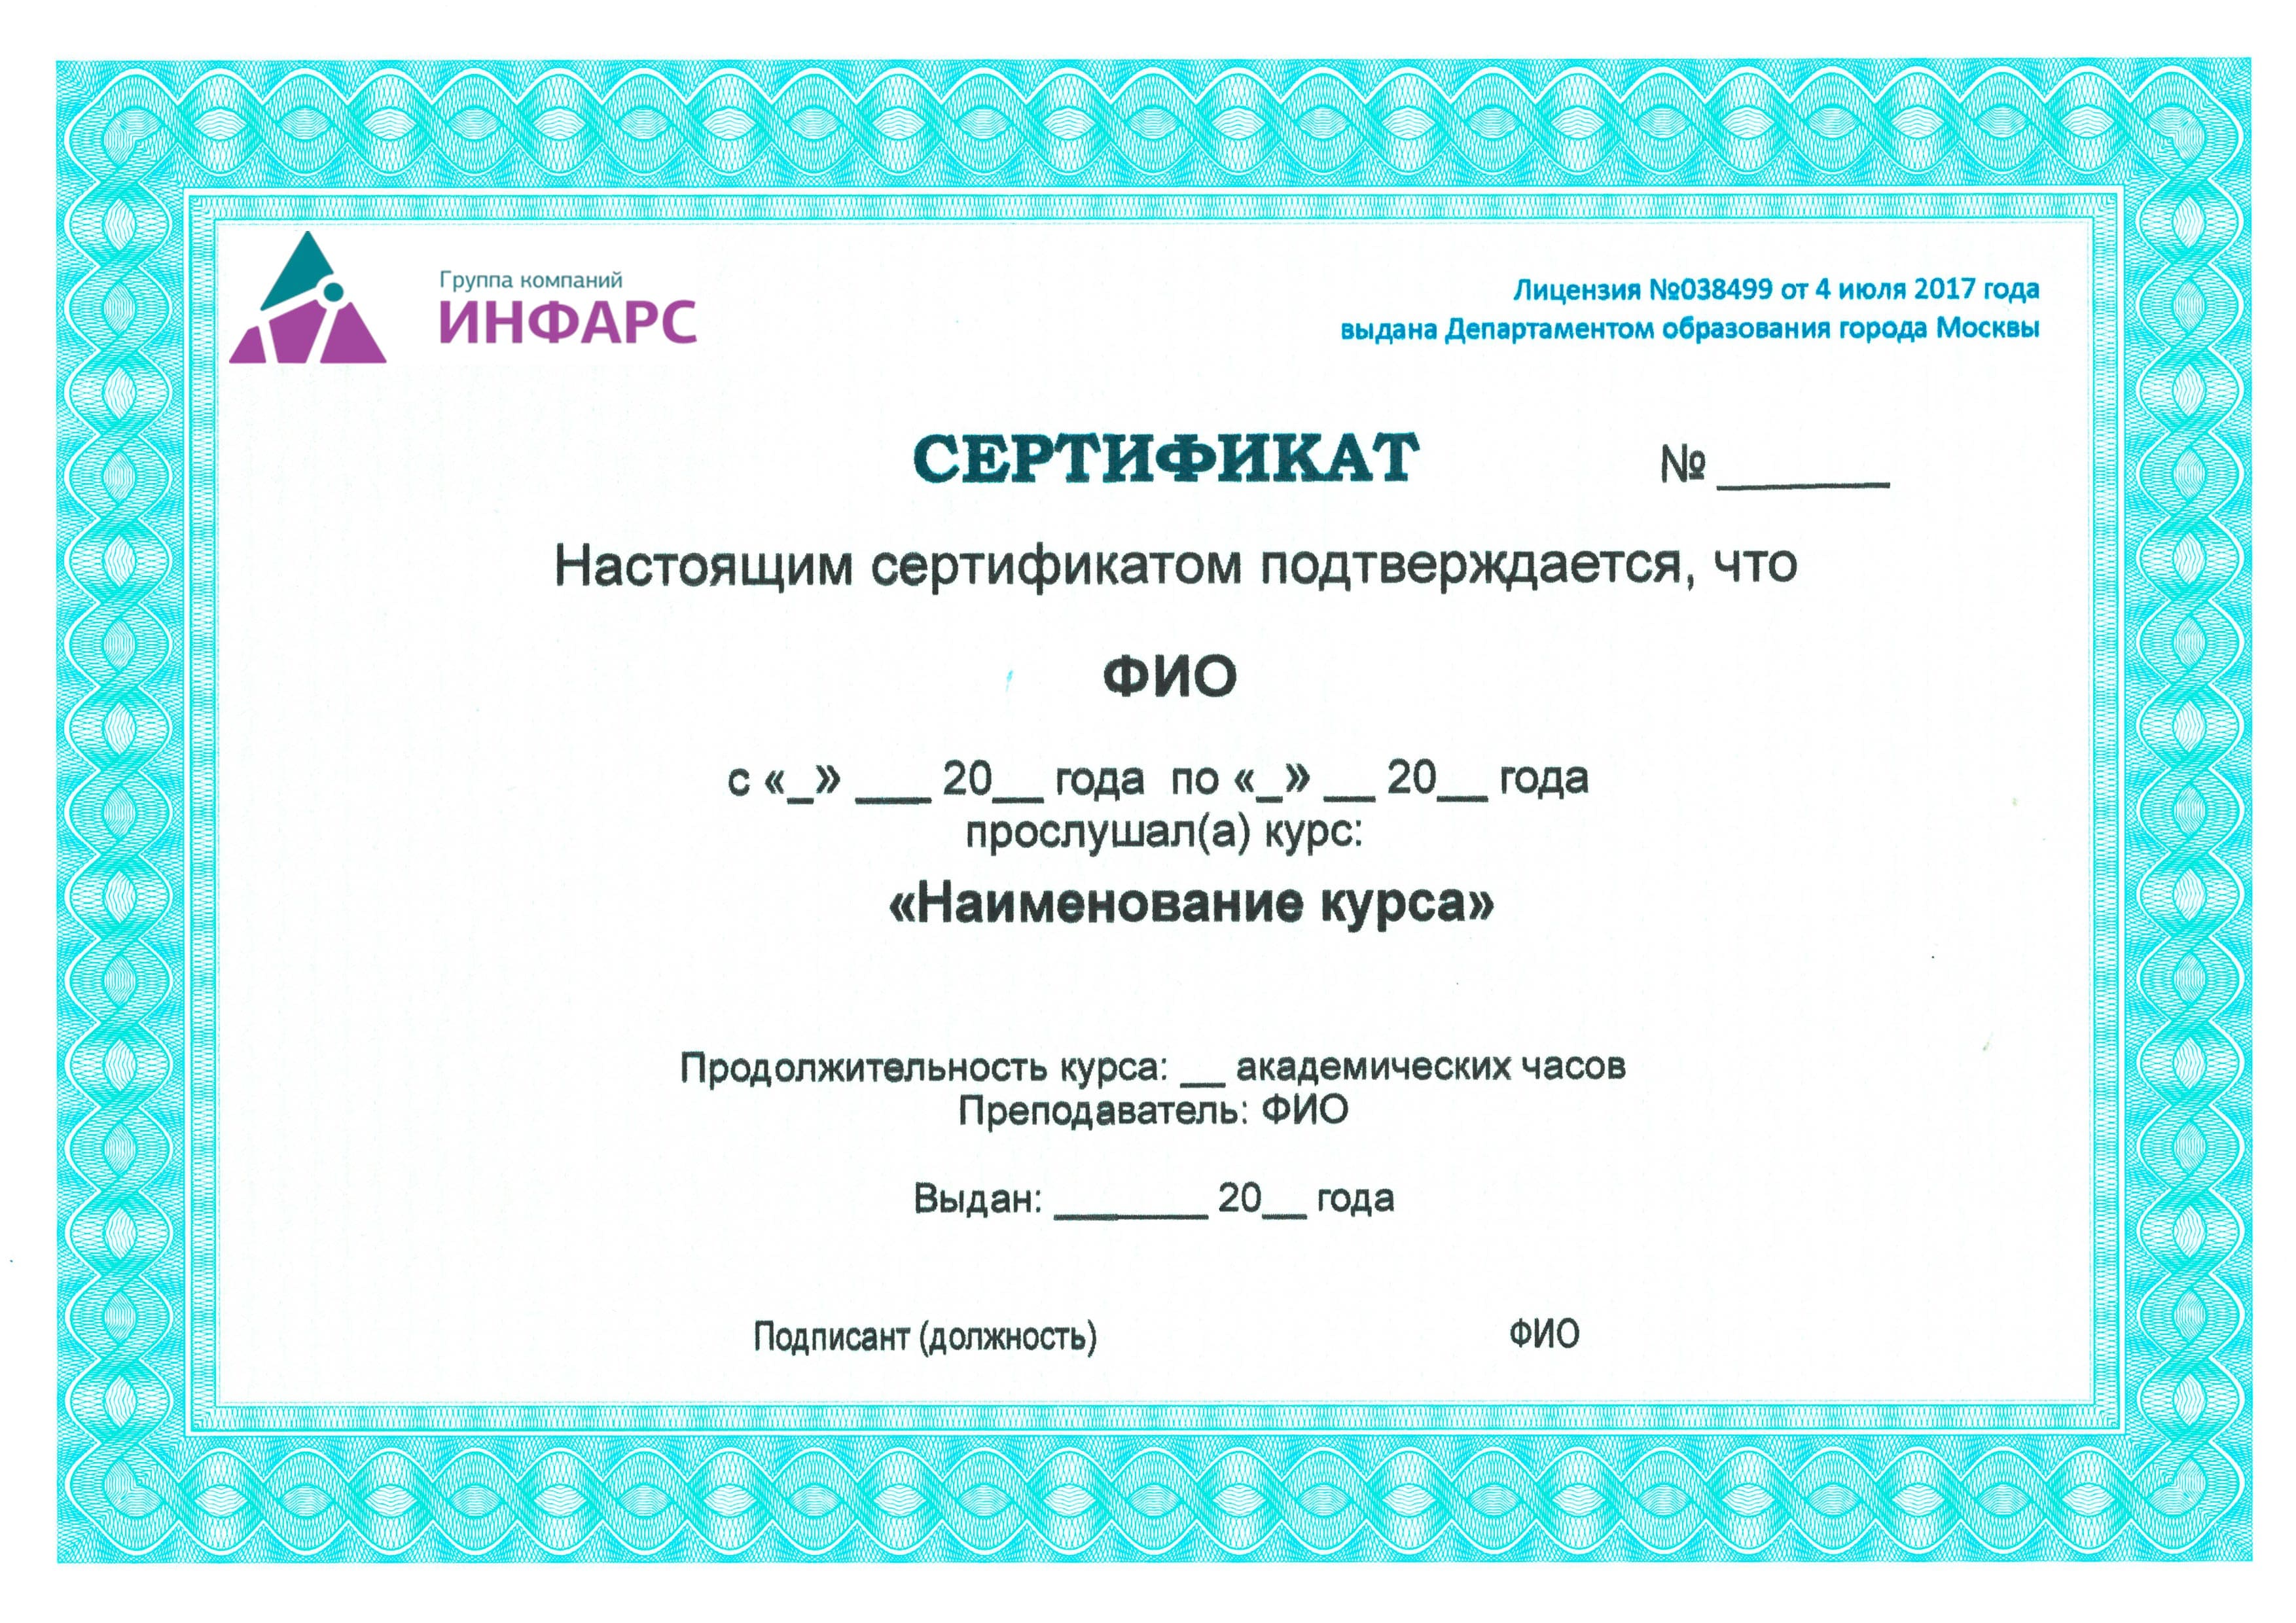 Сертификат учебного центра ИНФАРС